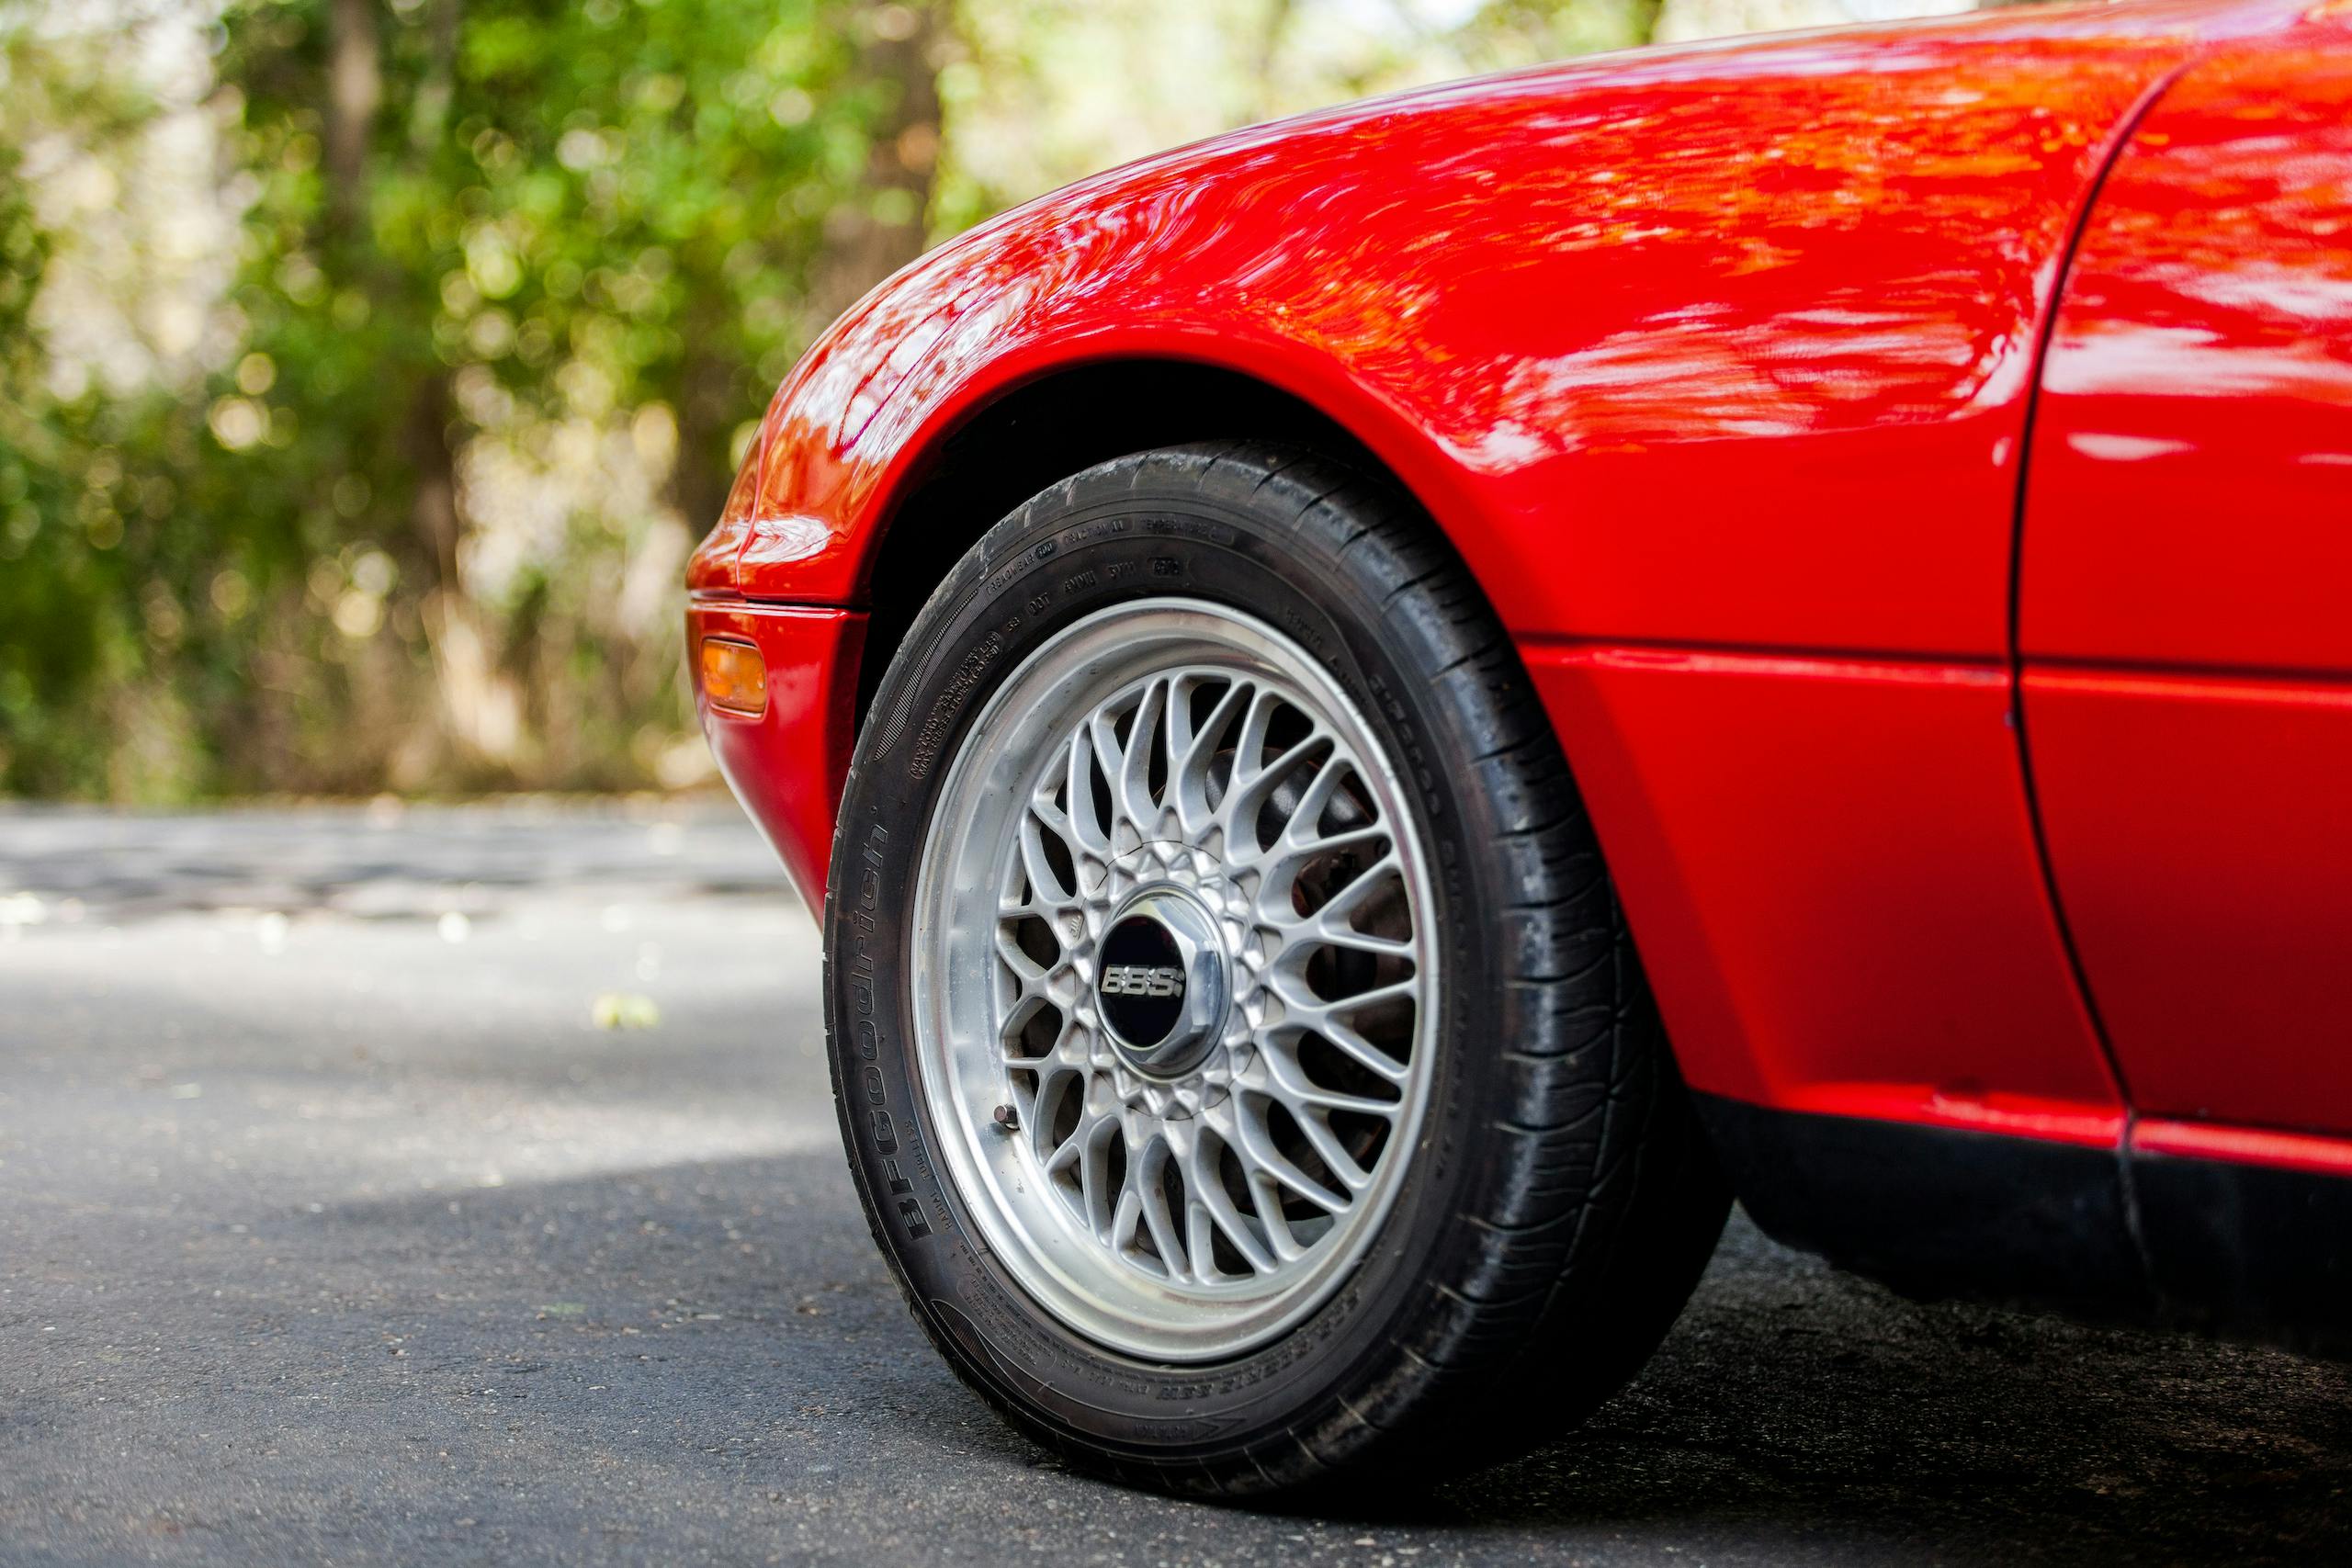 1995 Mazda Miata wheel tire